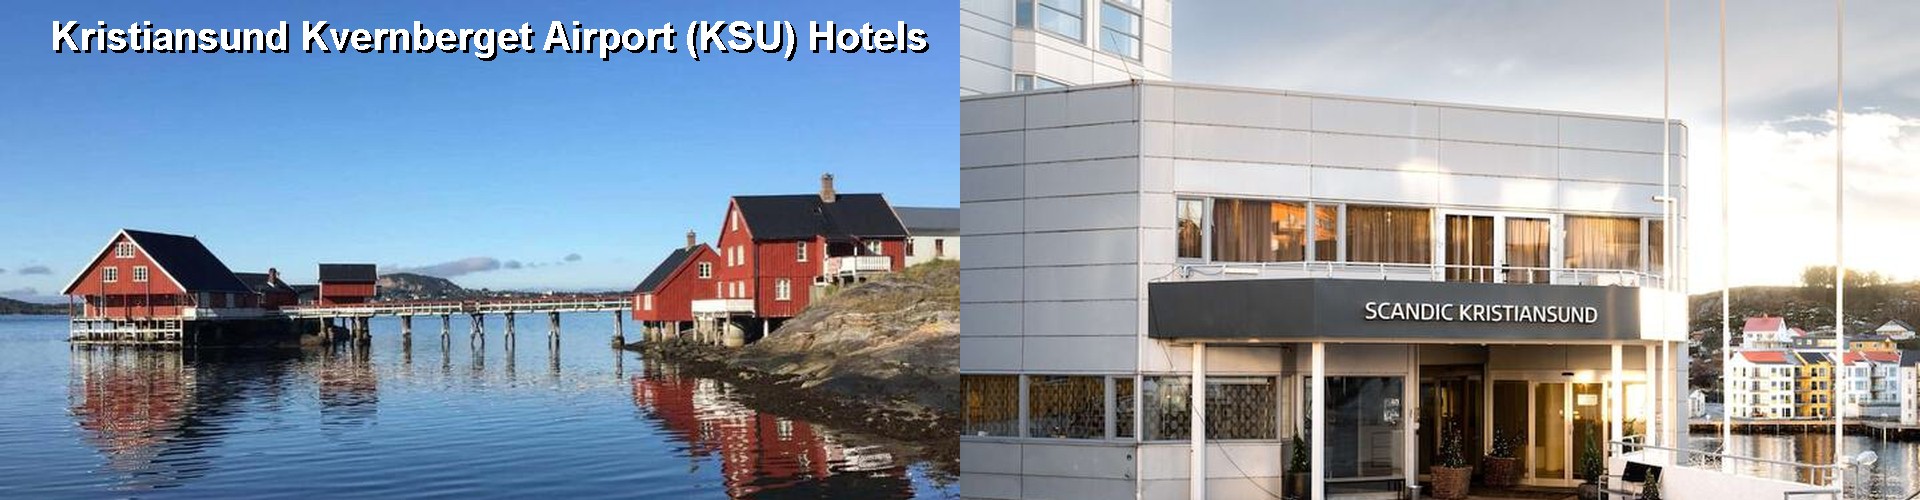 1 Best Hotels near Kristiansund Kvernberget Airport (KSU)